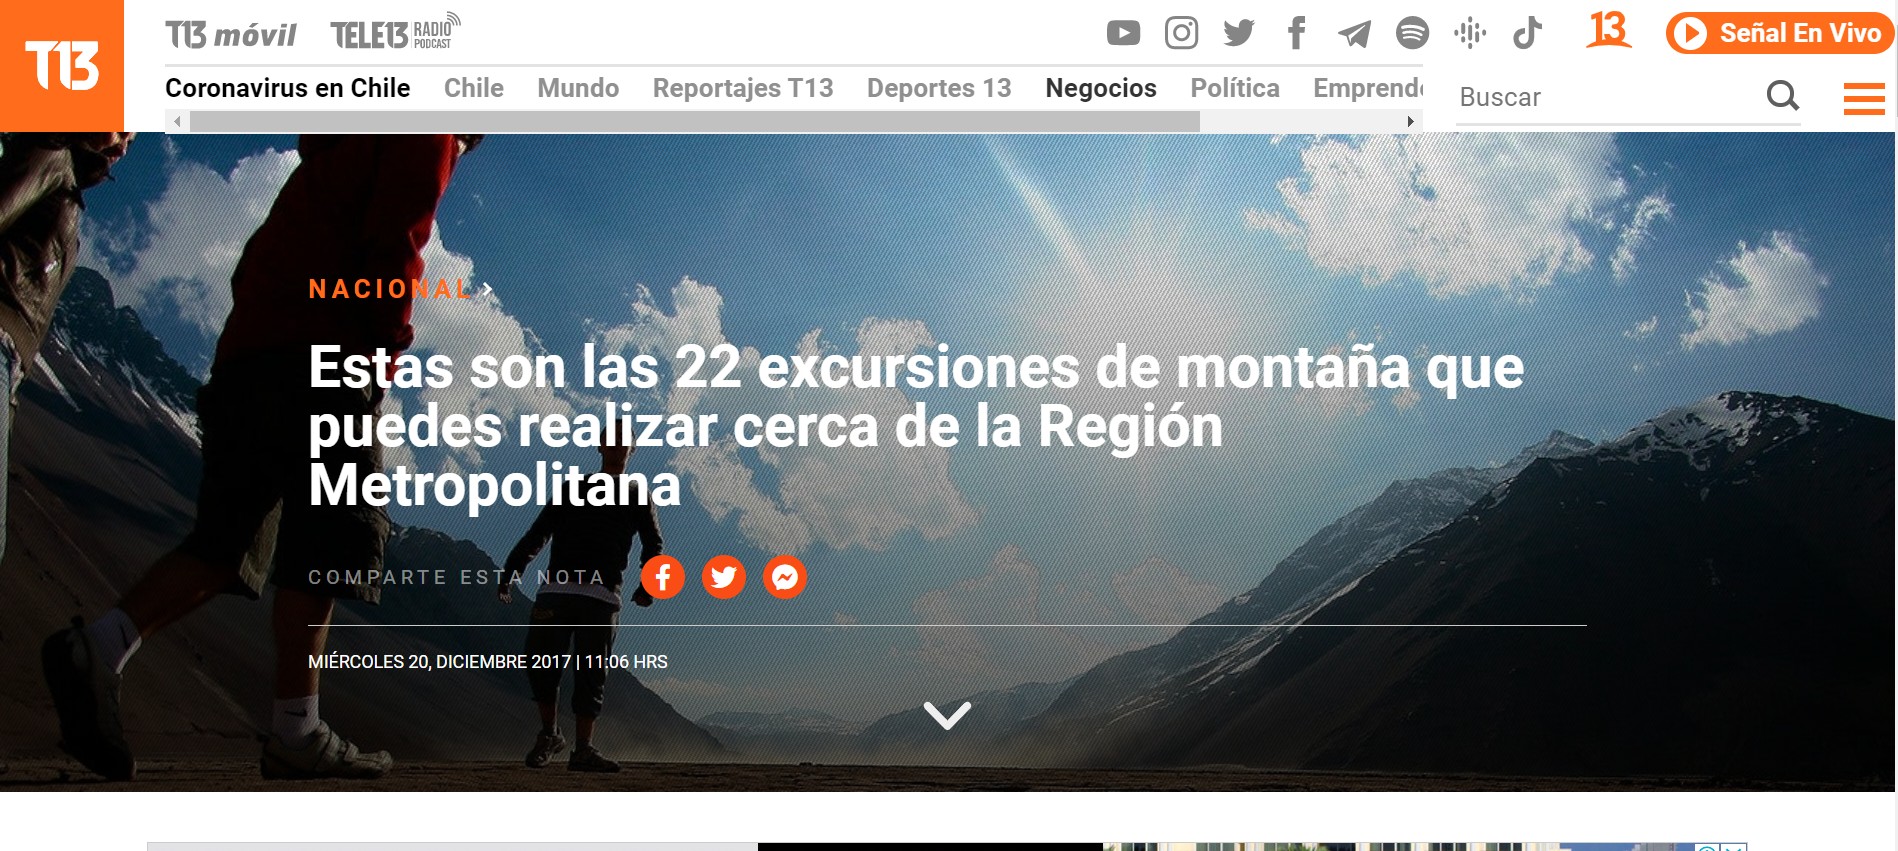 Estas son las 22 excursiones de montaña que puedes realizar cerca de la Región Metropolitana